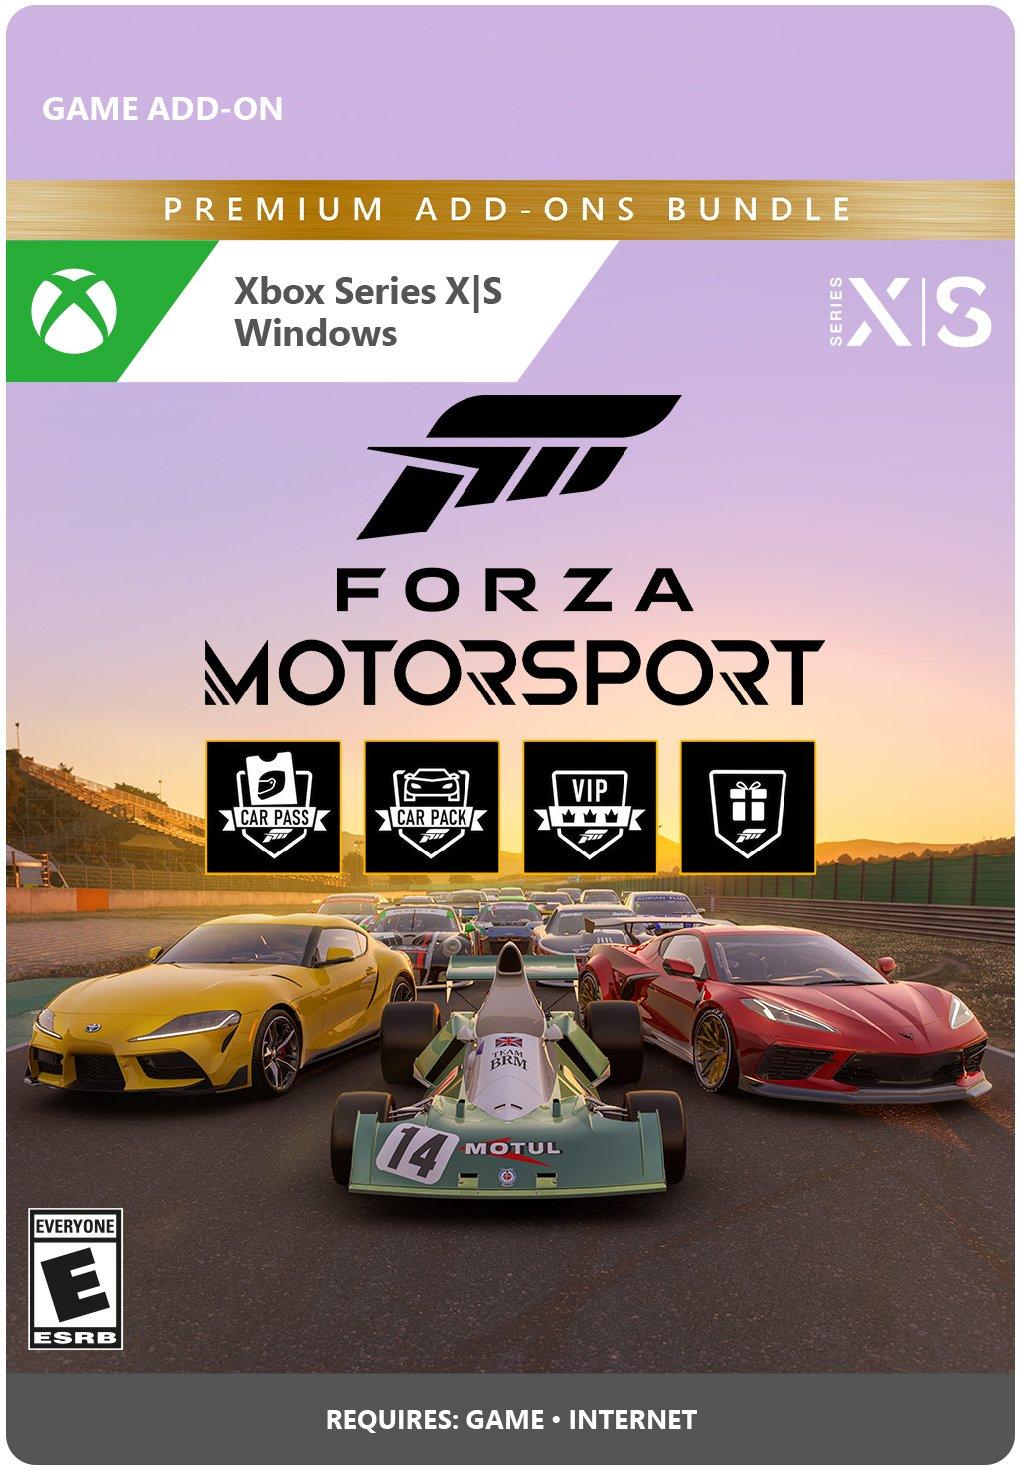 Forza Motorsport Premium Add-Ons Bundle on Steam